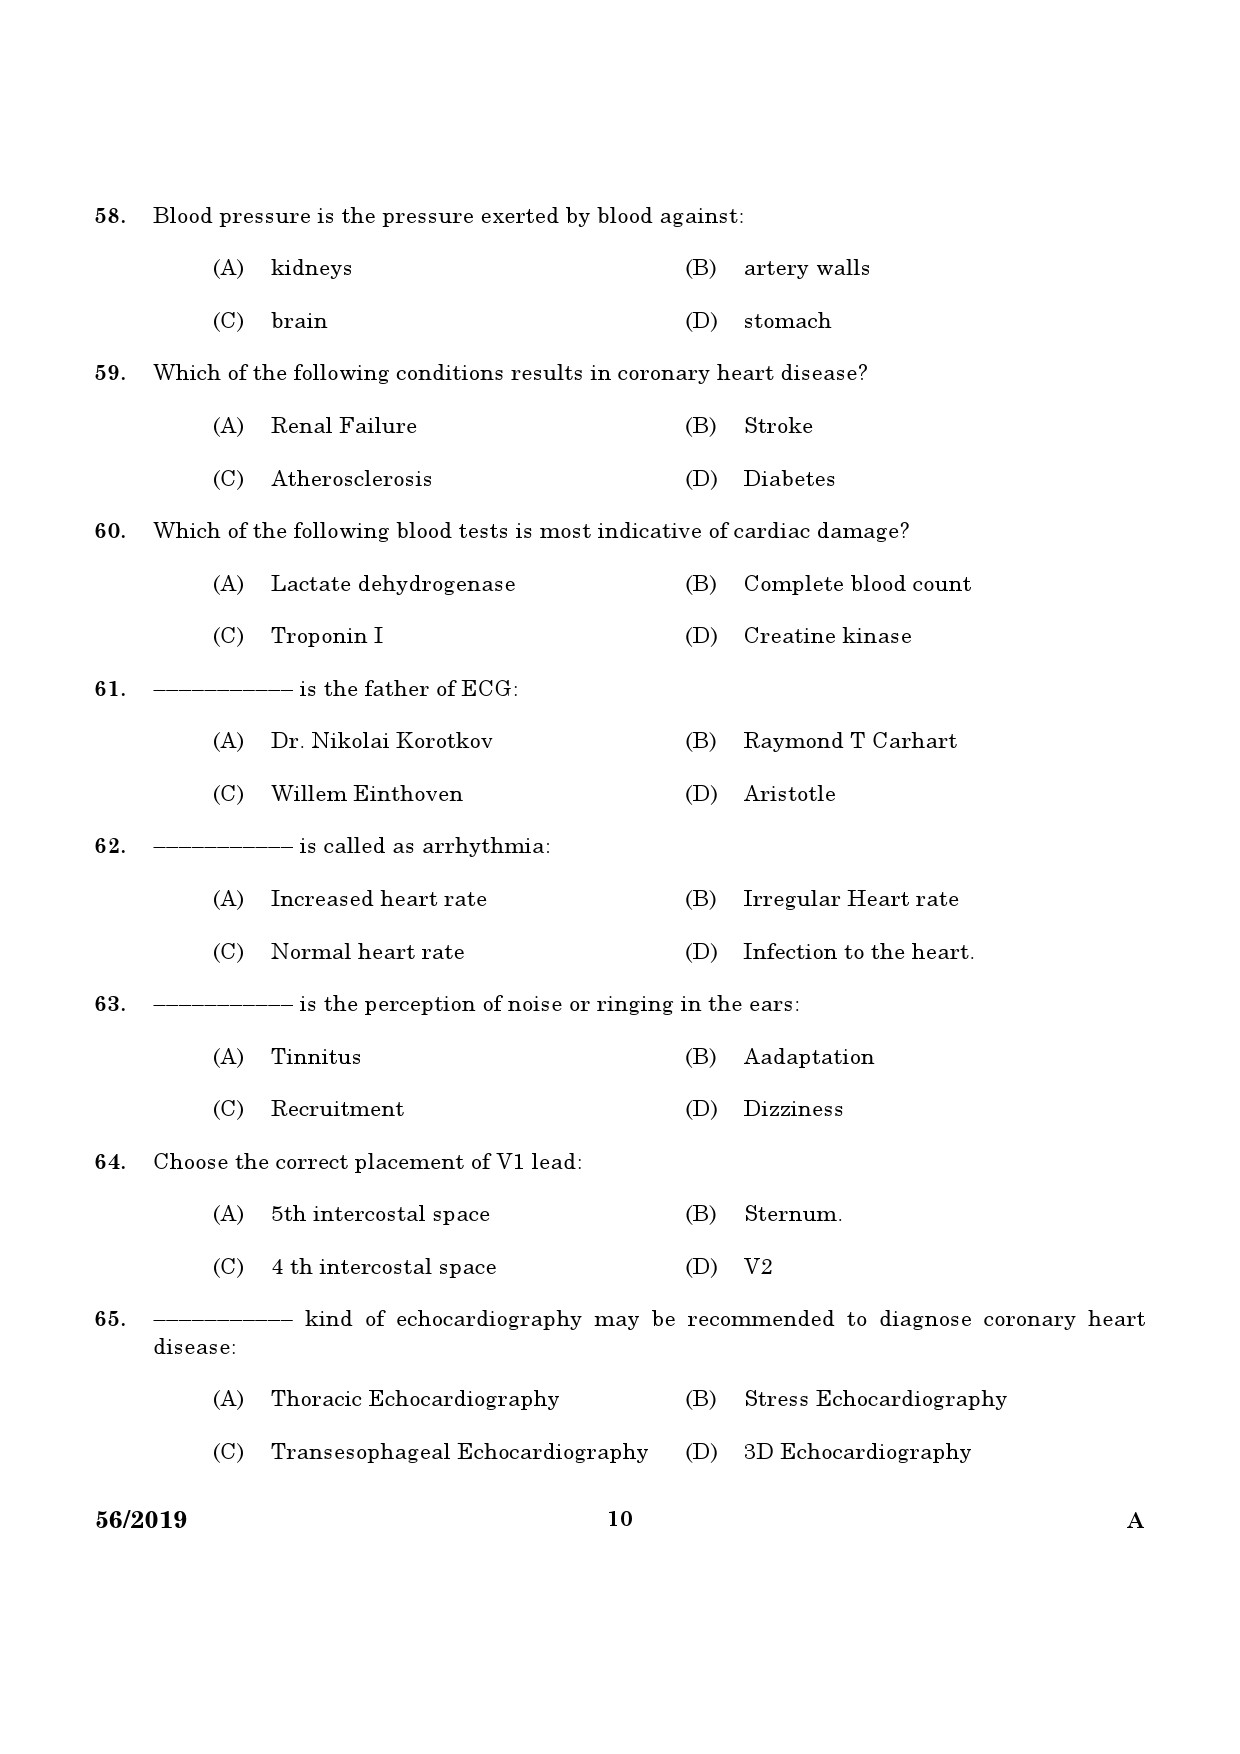 KPSC ECG Technician Grade II Exam Question Paper 0562019 8